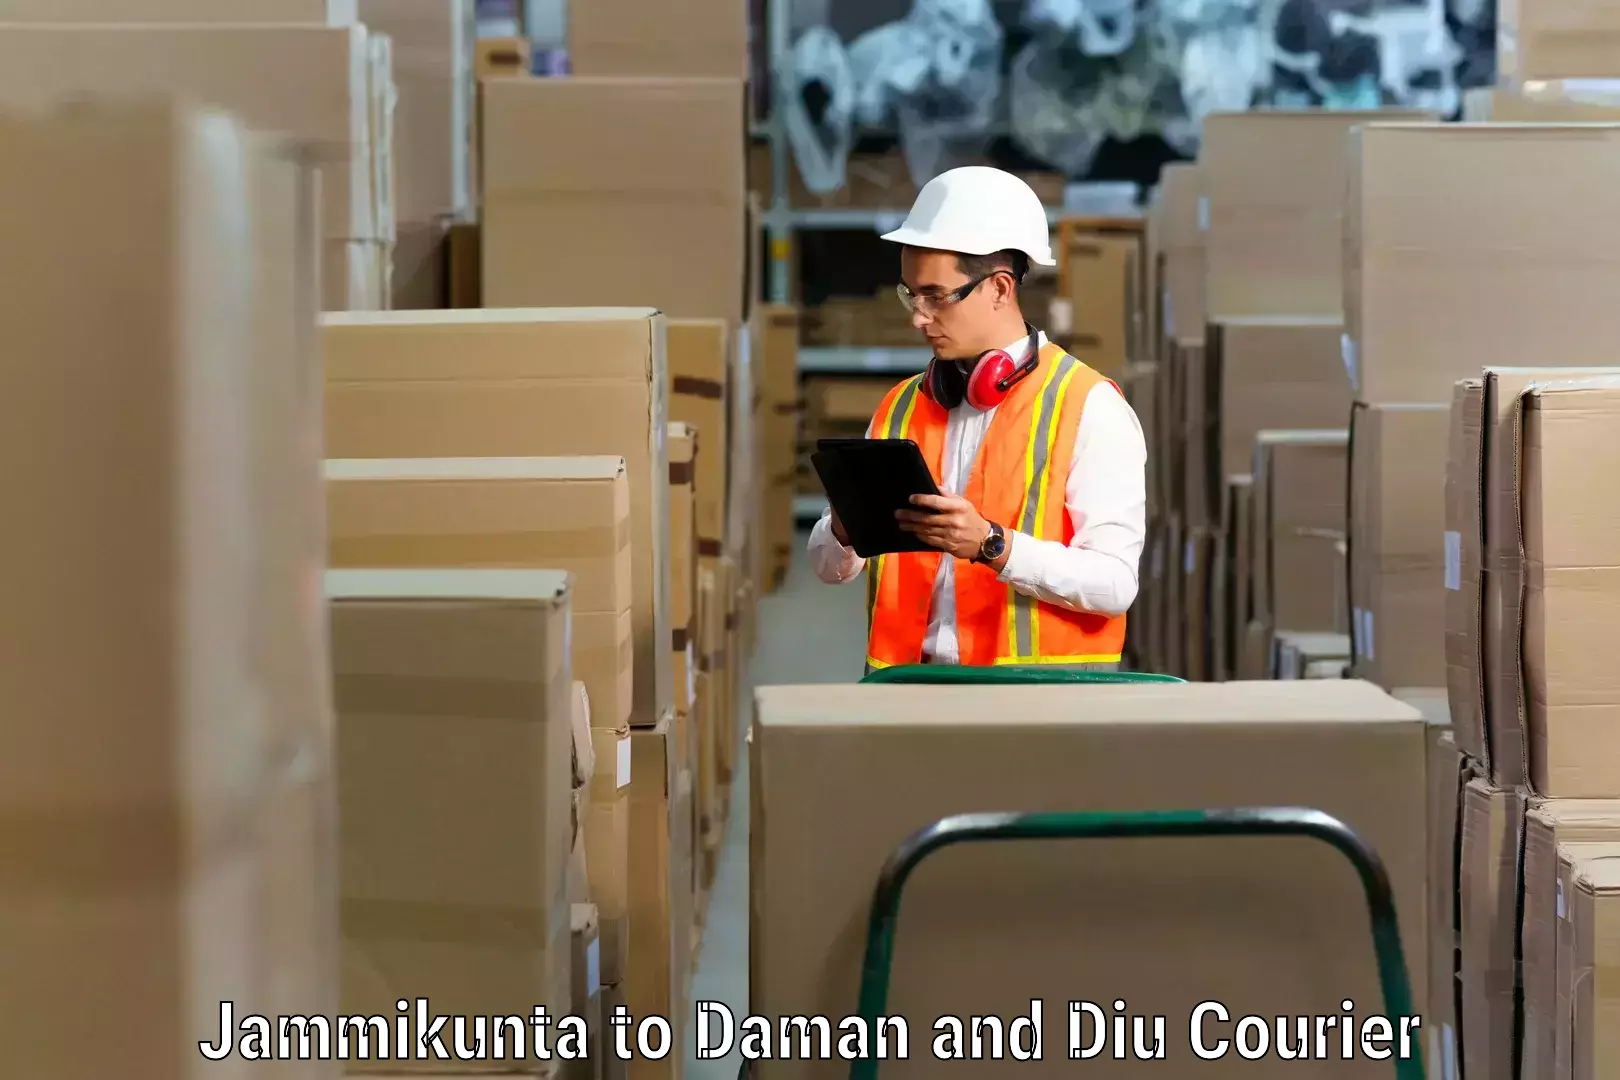 Furniture moving service Jammikunta to Daman